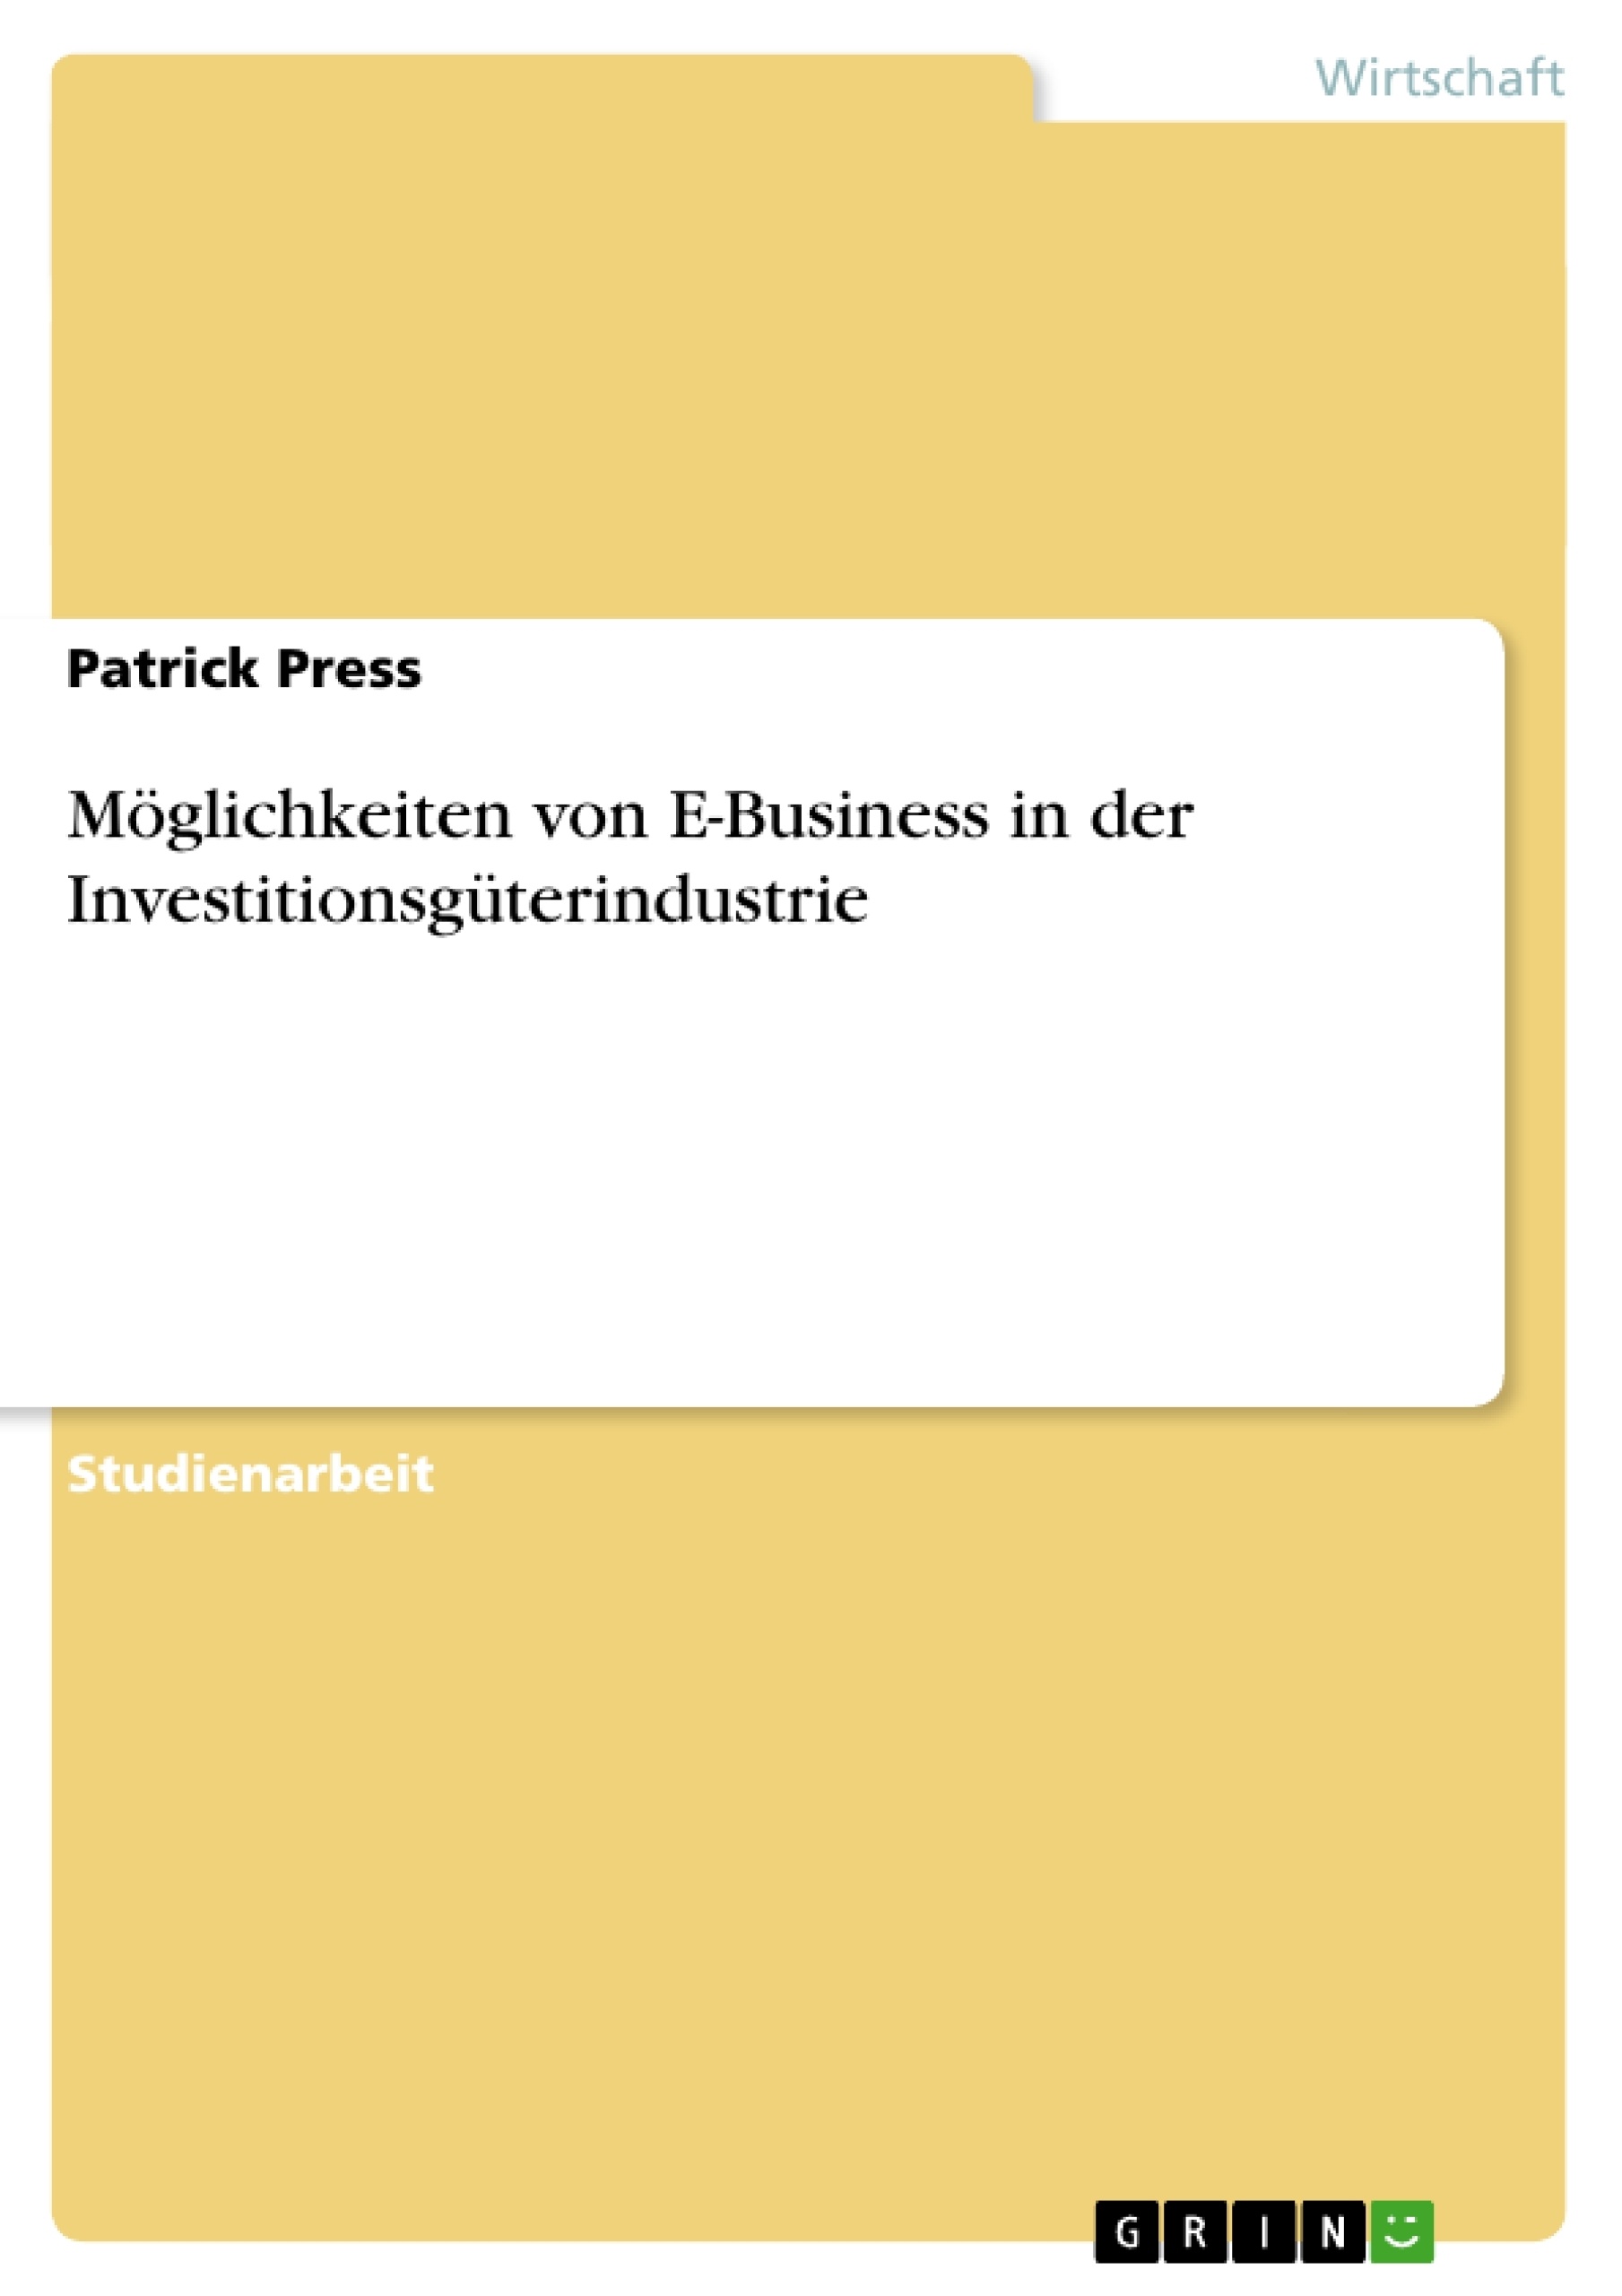 Título: Möglichkeiten von E-Business in der Investitionsgüterindustrie